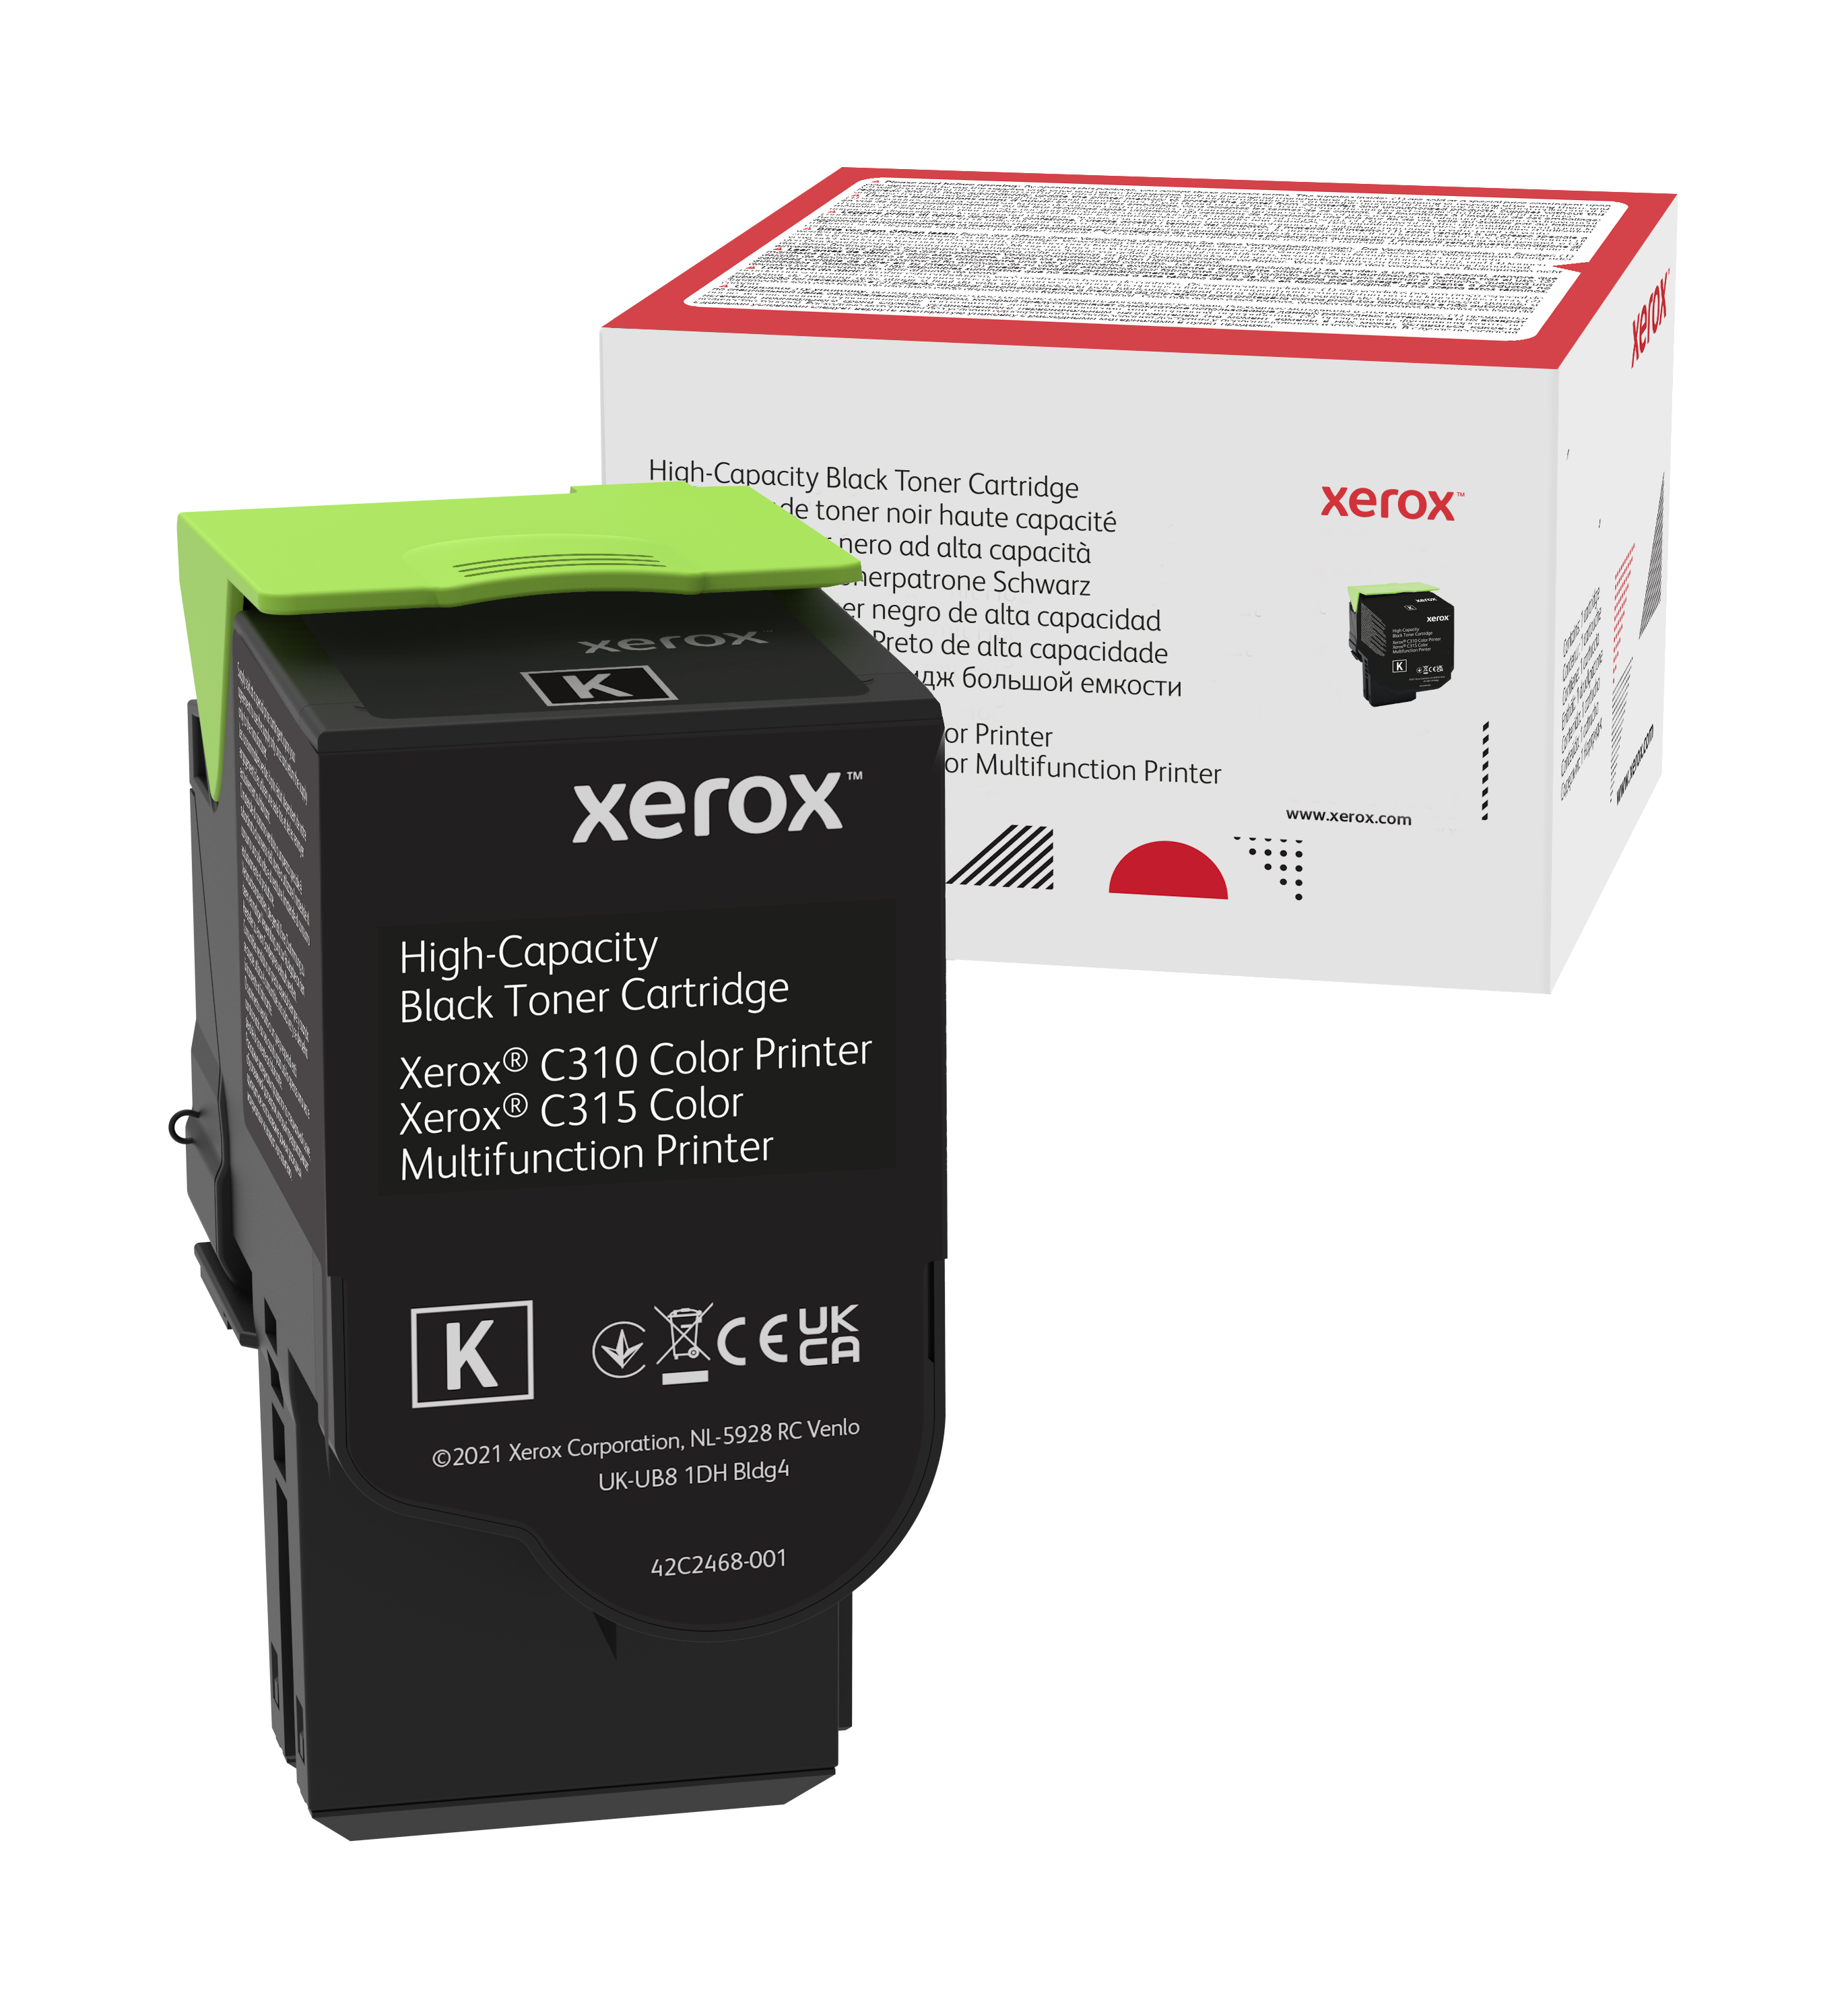 Genuine Xerox Black High Capacity Toner Cartridge, Xerox C310 